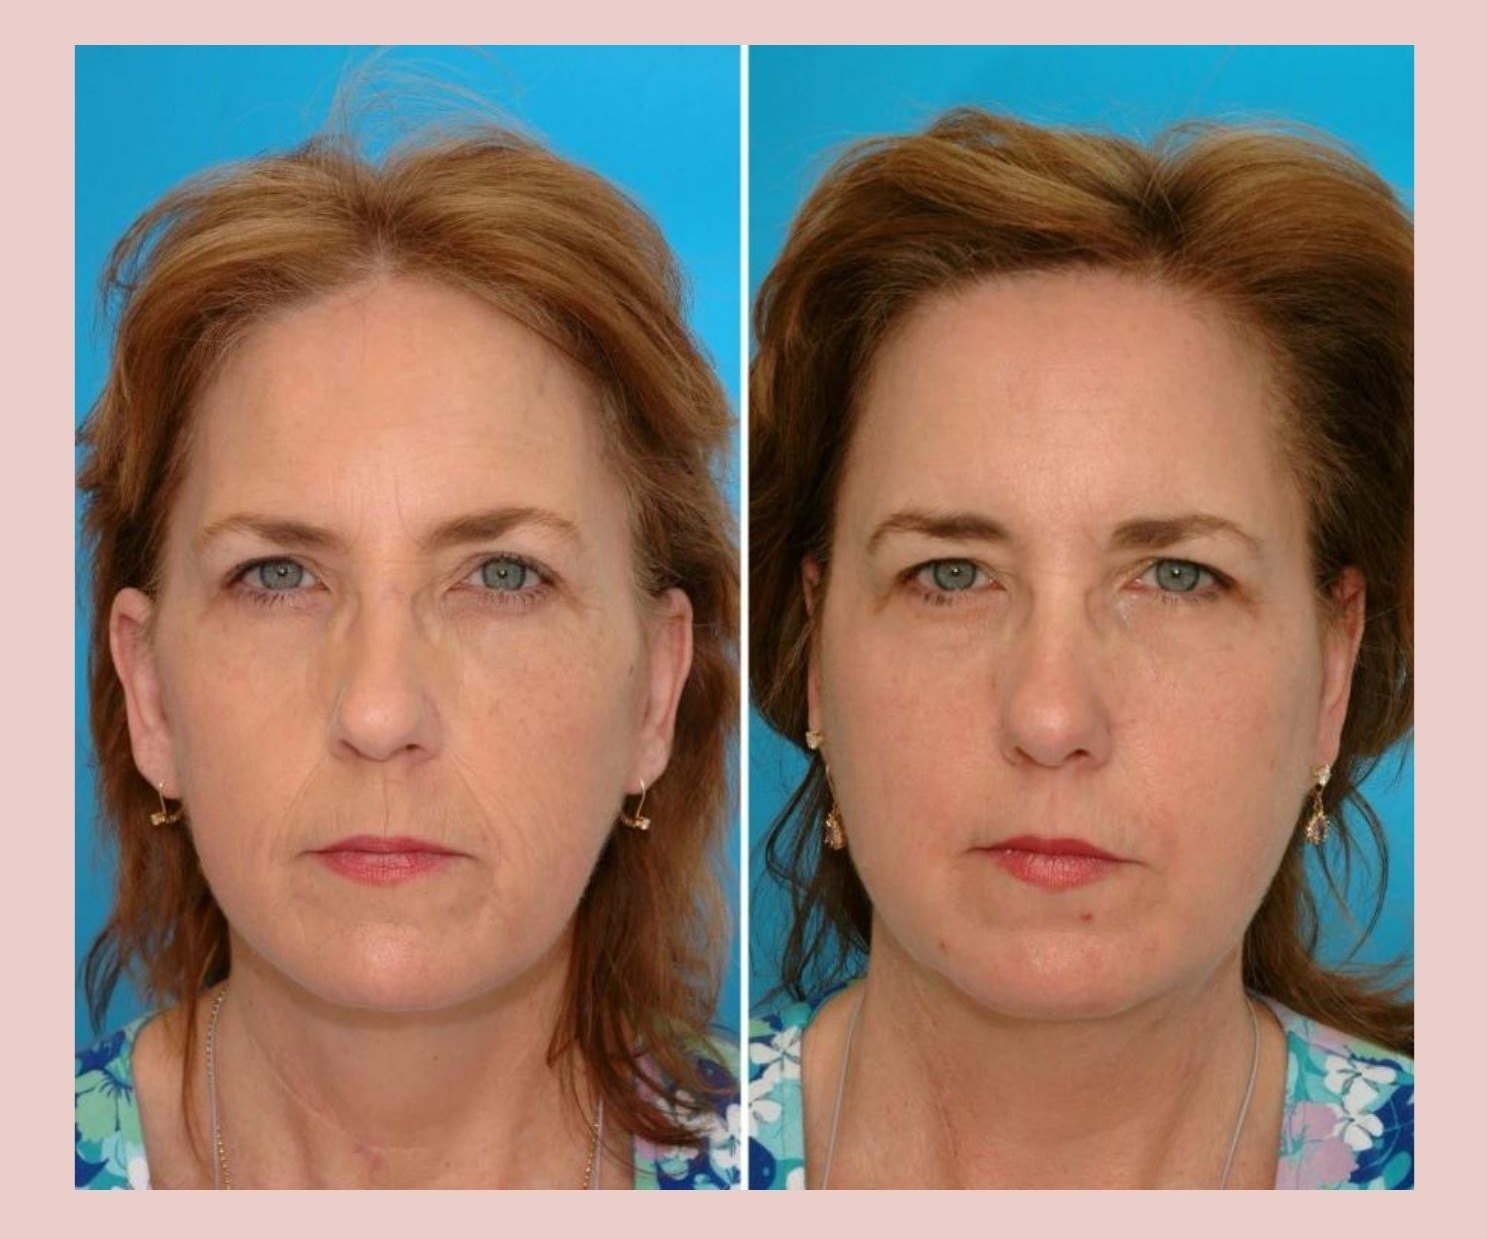 Генетика ни при чем: эти фото близнецов показывают реальные причины старения